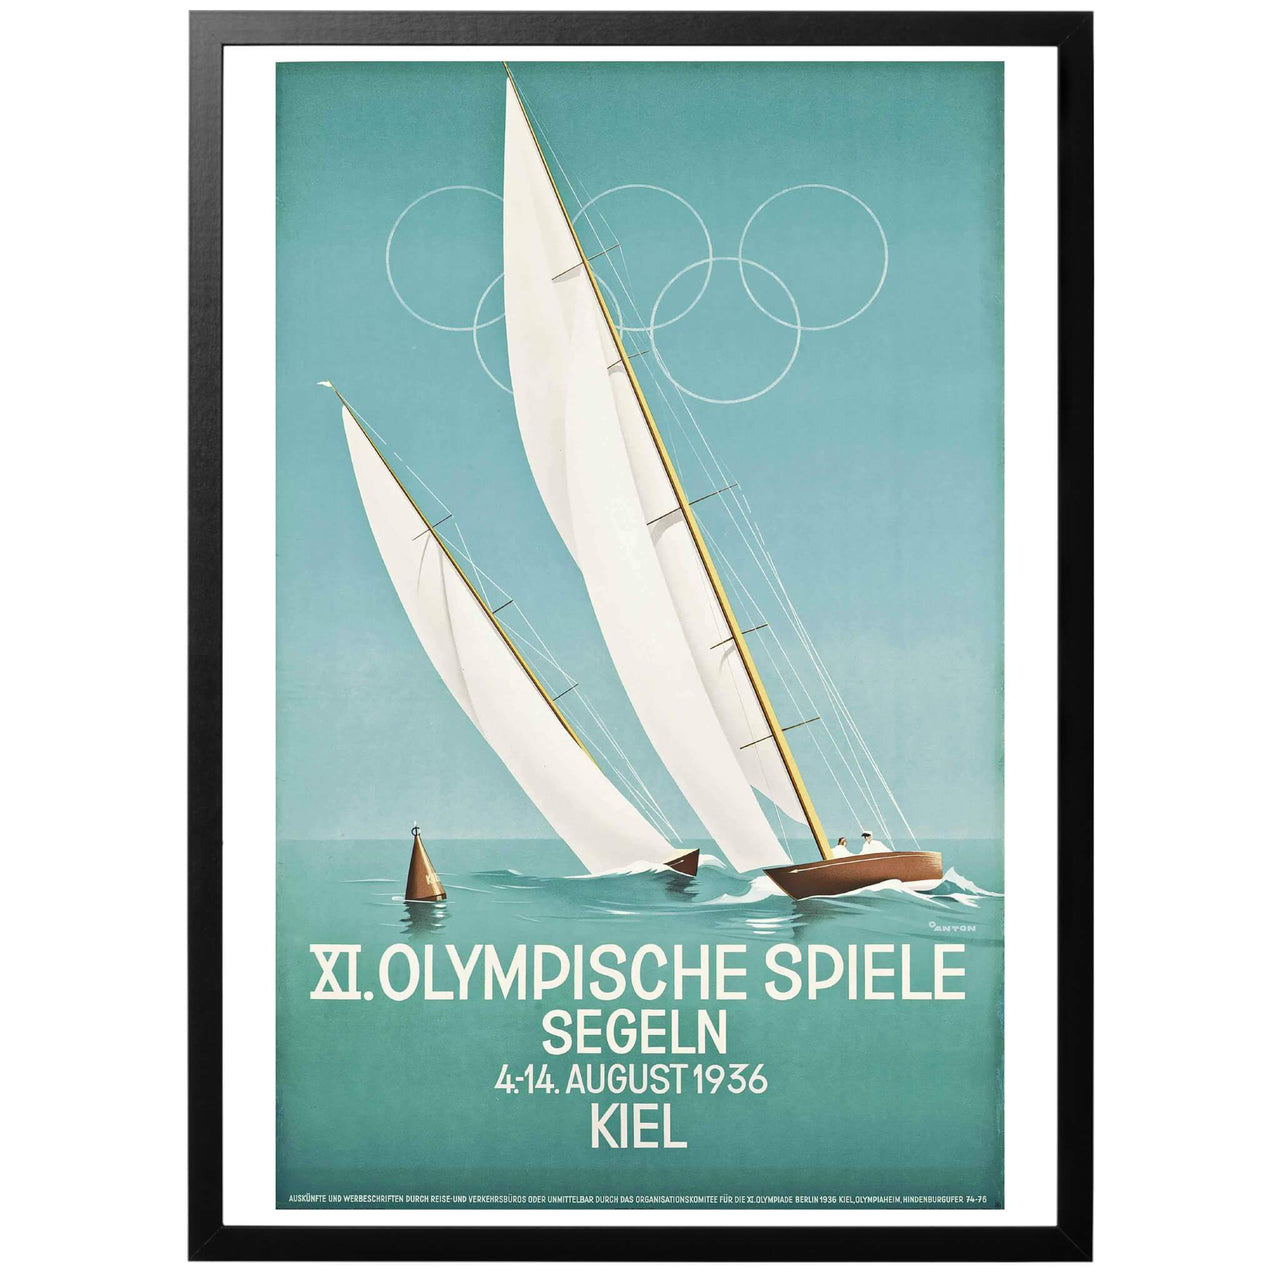 XI Olympische Spiele - Segeln Poster